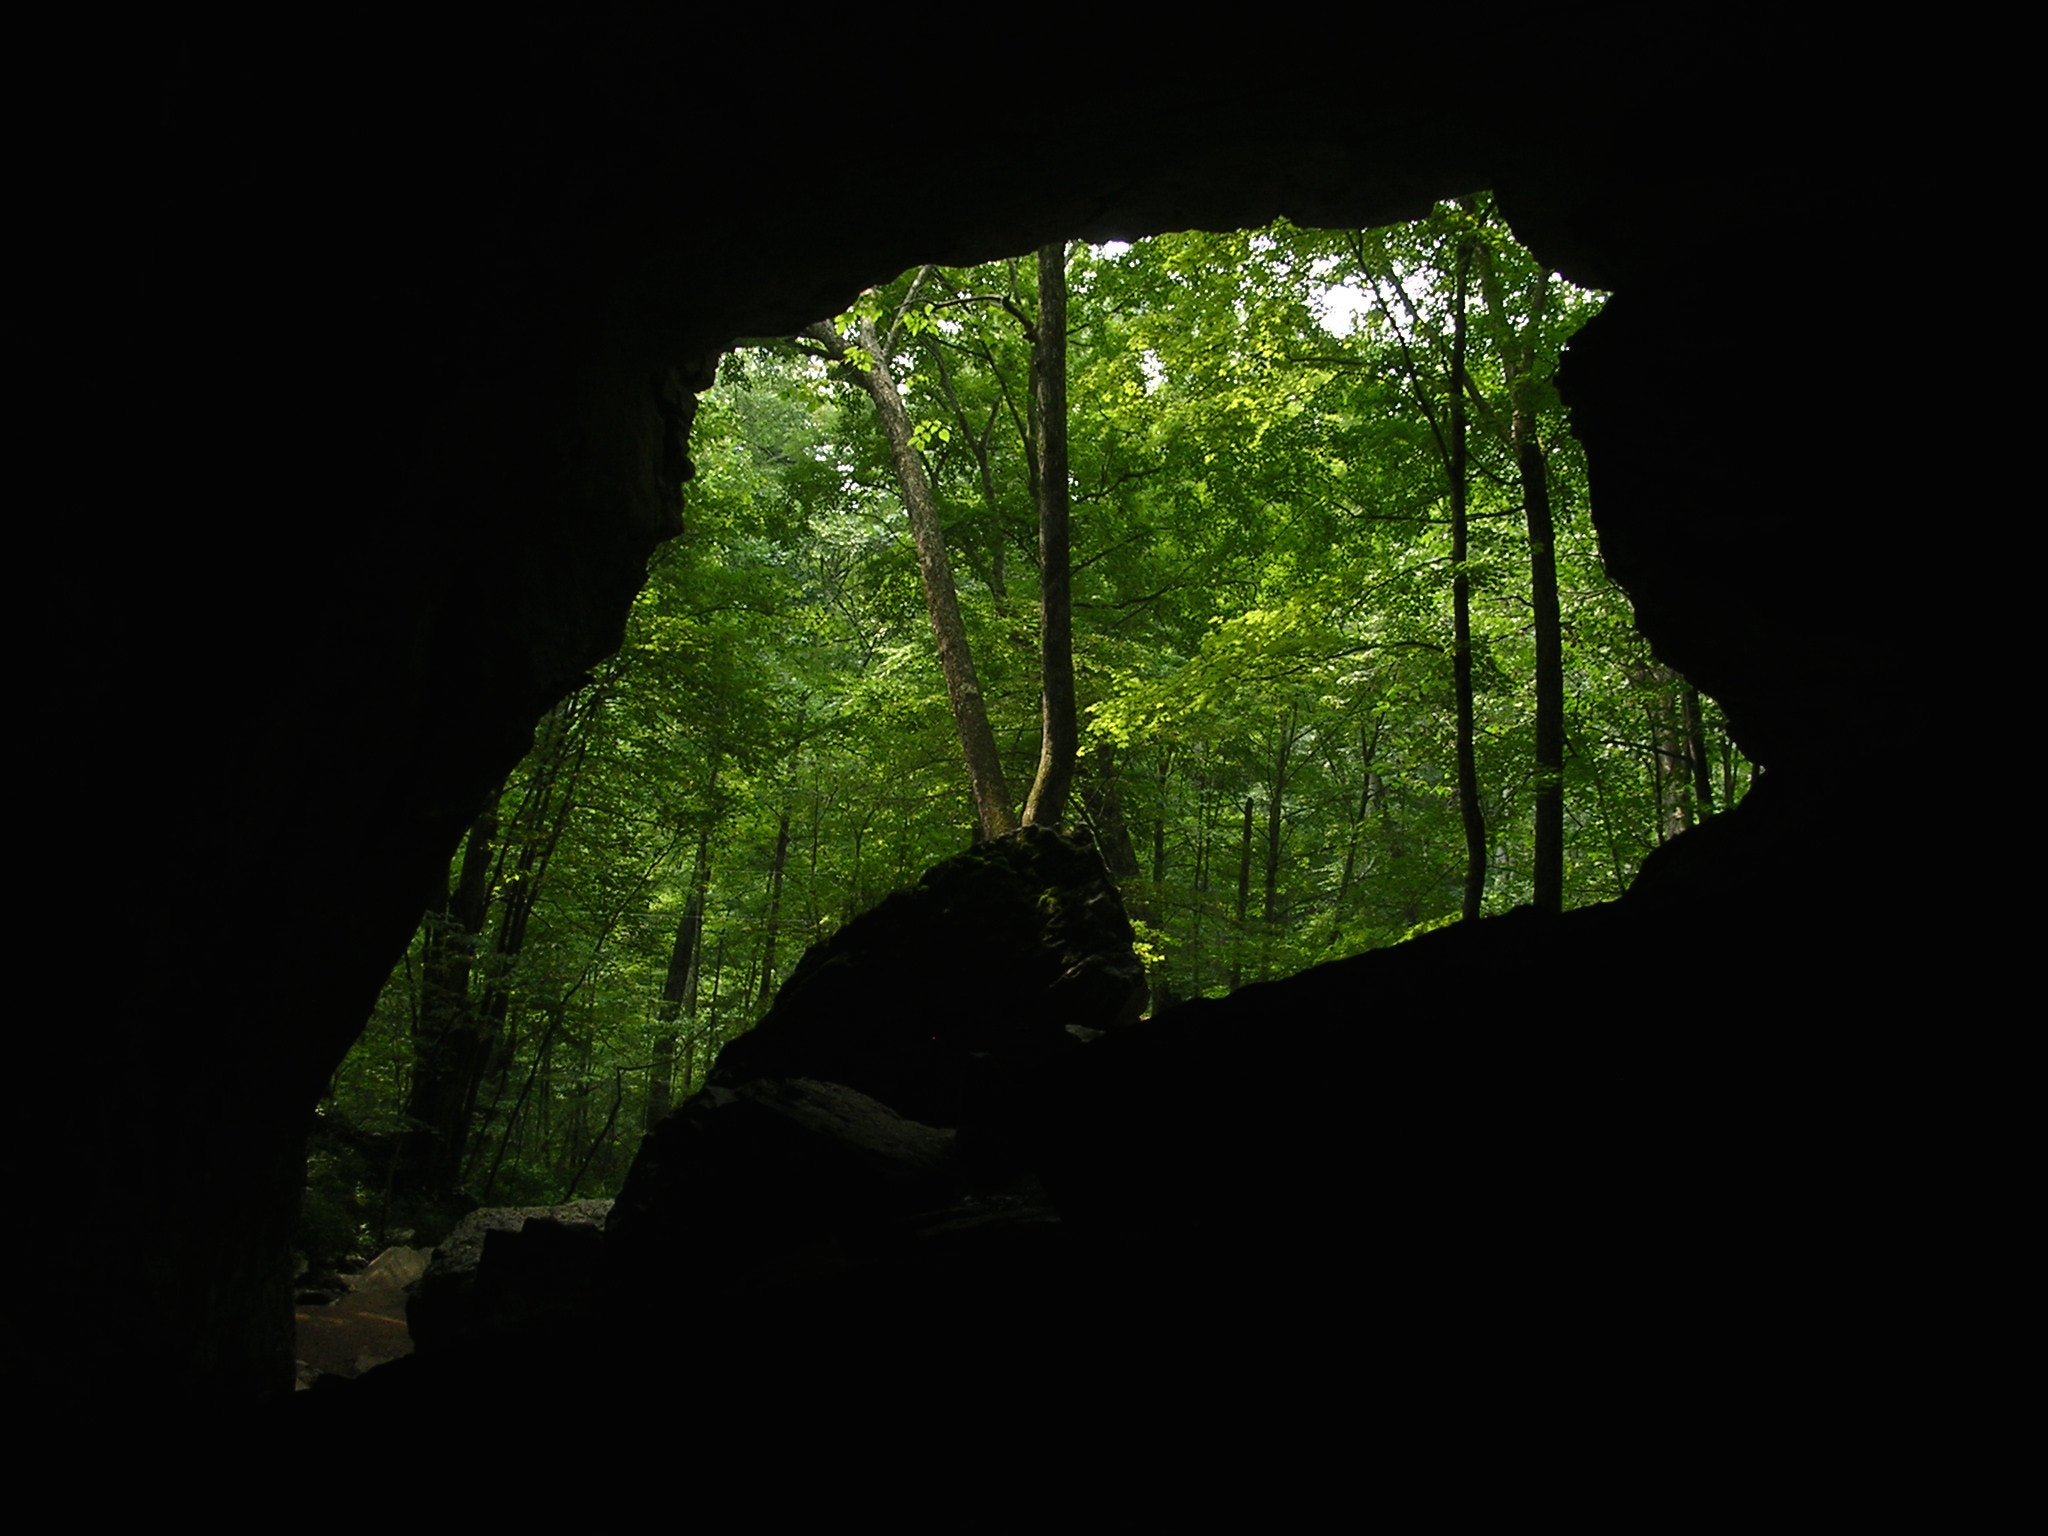 Nikon E3100 sample photo. Carter caves, kentucky photography